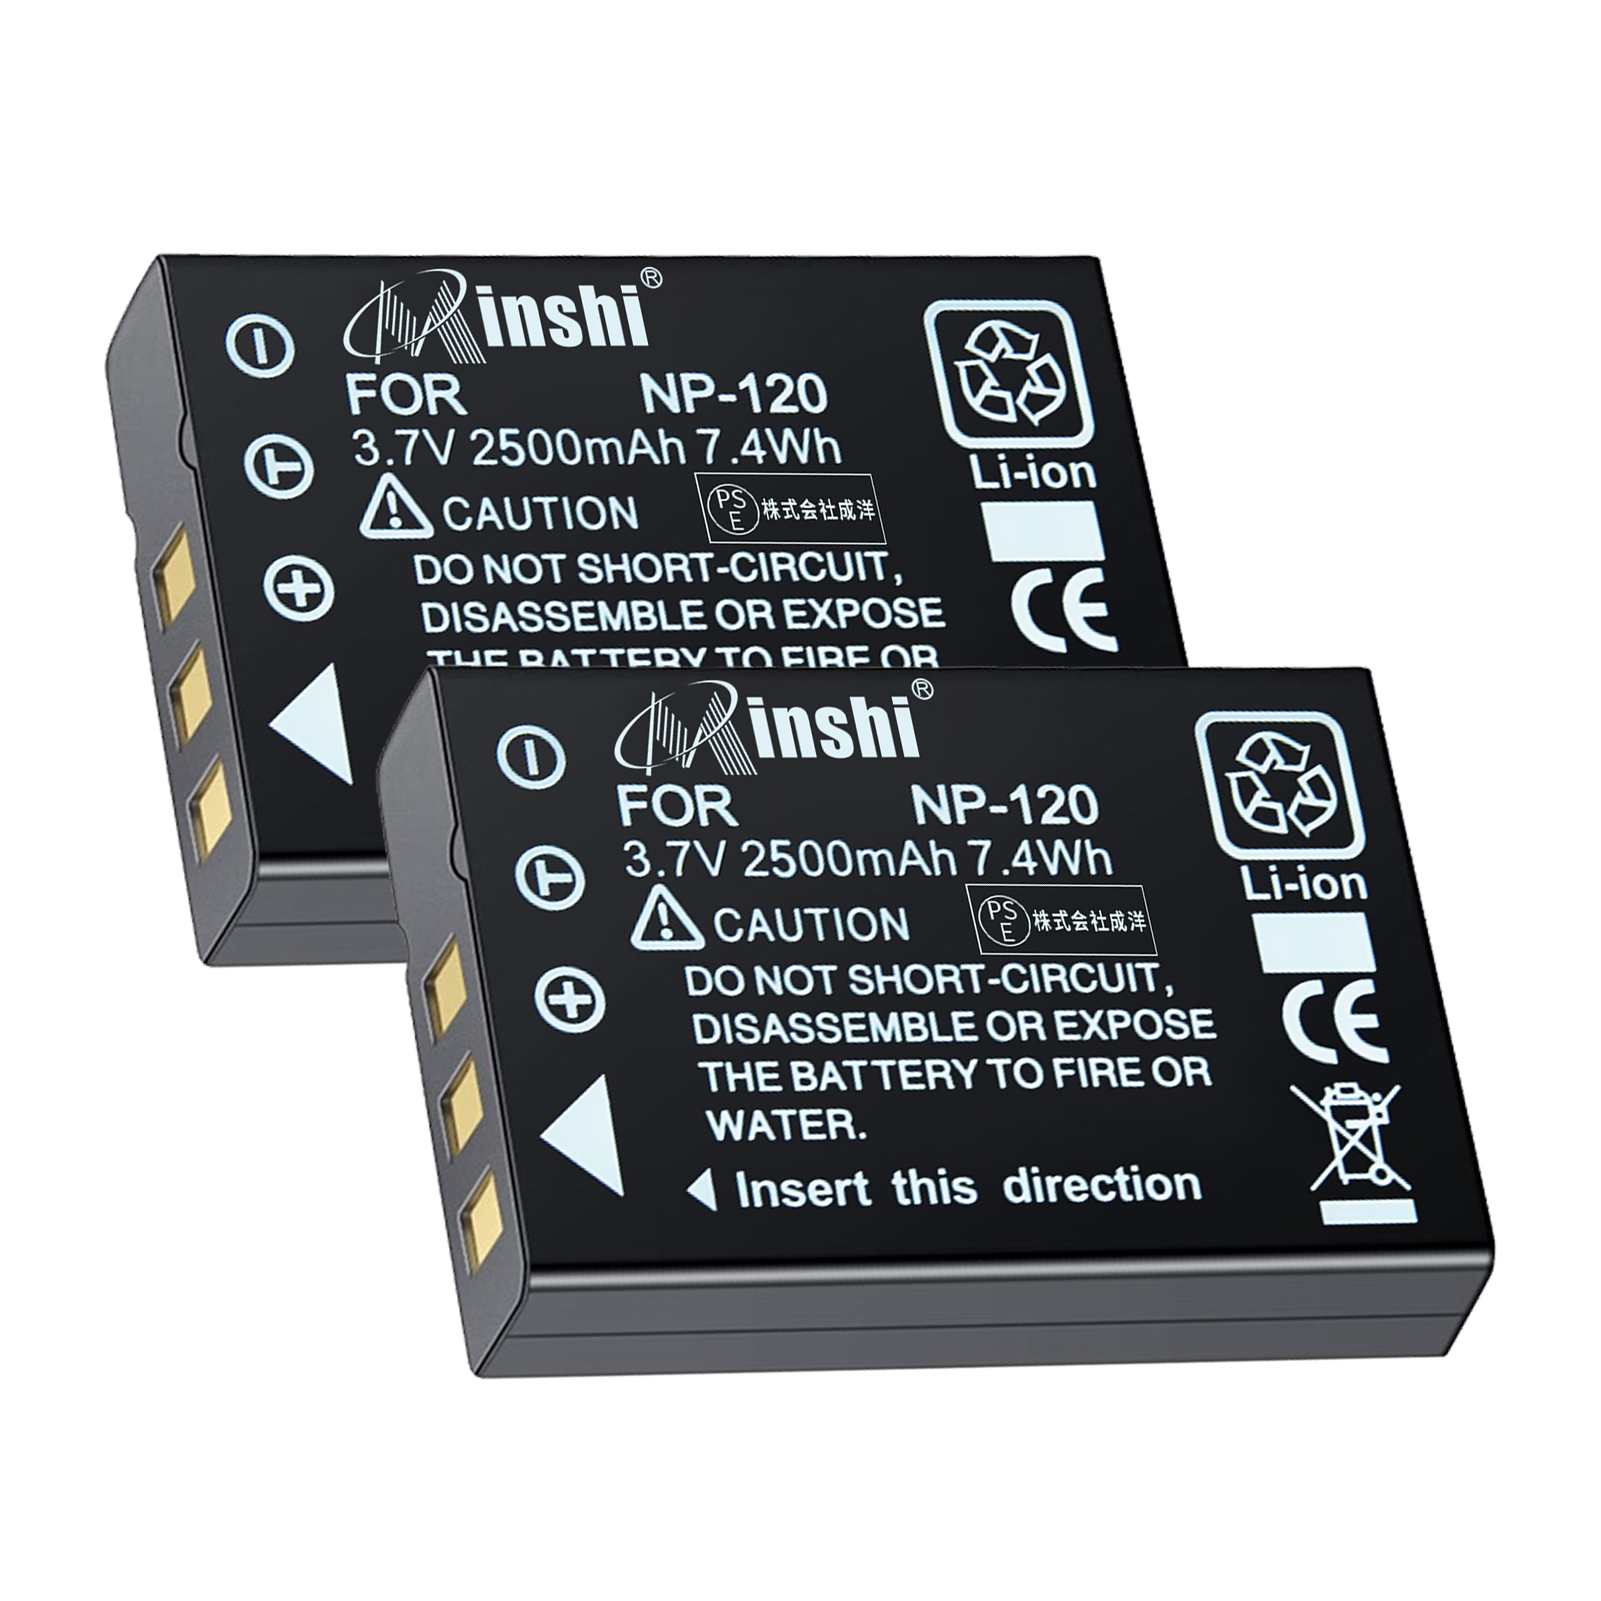 【２個セット】 minshi FUJIFILM FinePix F11 対応 互換バッテリー 2500mAh PSE認定済 高品質交換用バッテリー